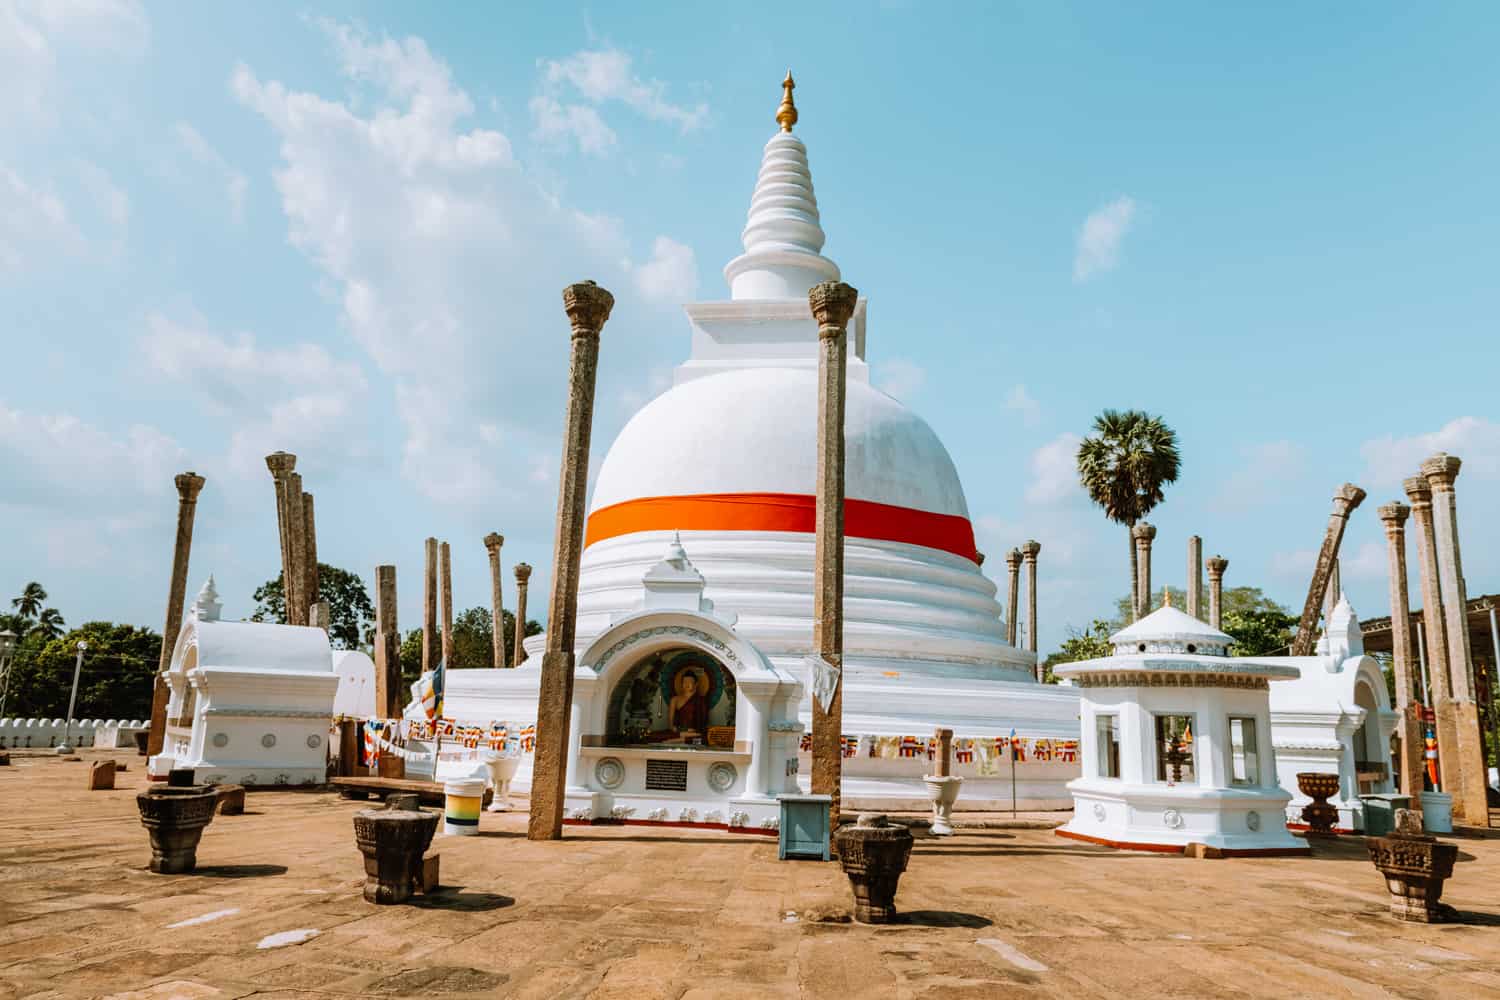 Thuparamaya Stupa in Anuradhapura